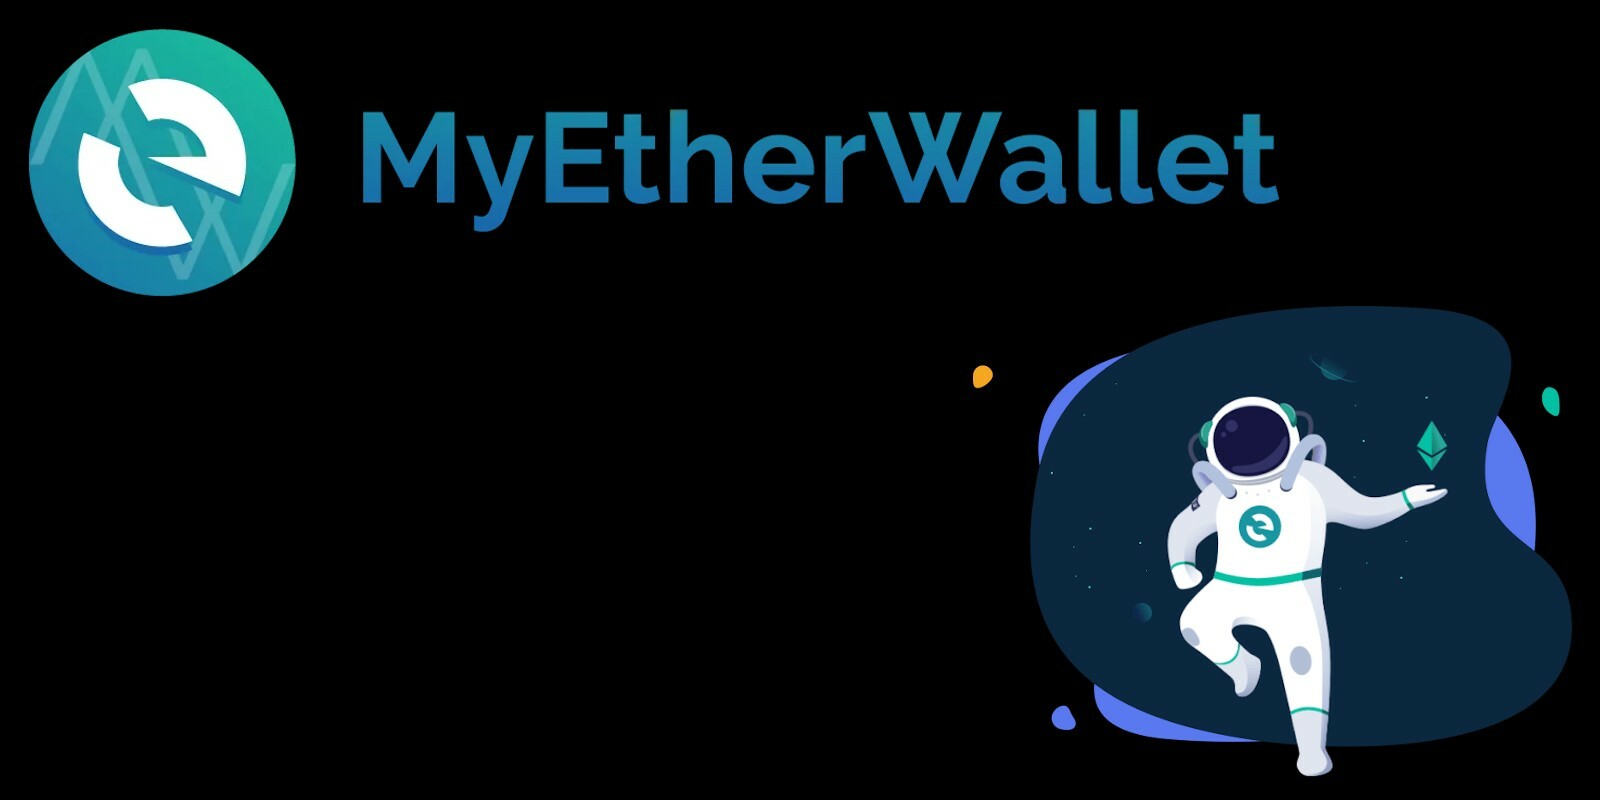 Vous pouvez maintenant héberger un site de manière décentralisée grâce à MyEtherWallet